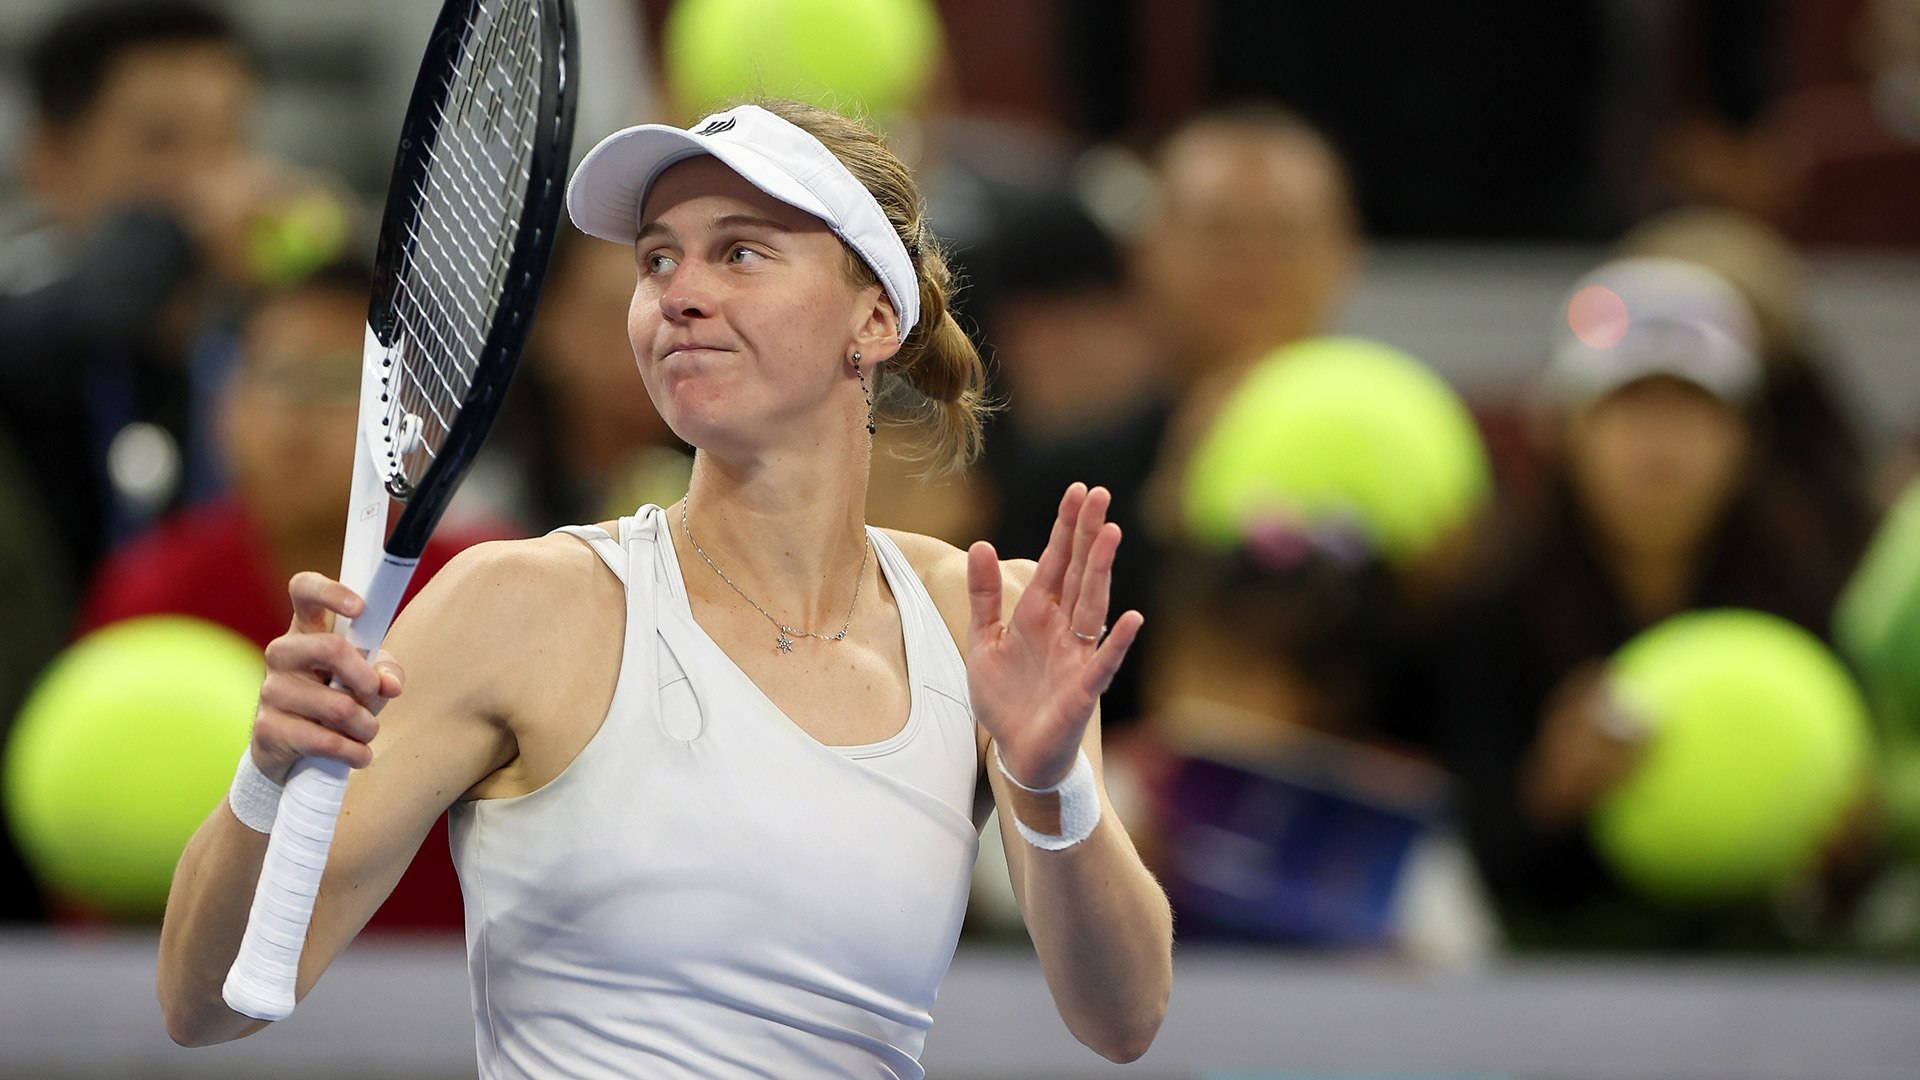 Dubai, UAE, 19th. Feb, 2023. Russian tennis player Liudmila